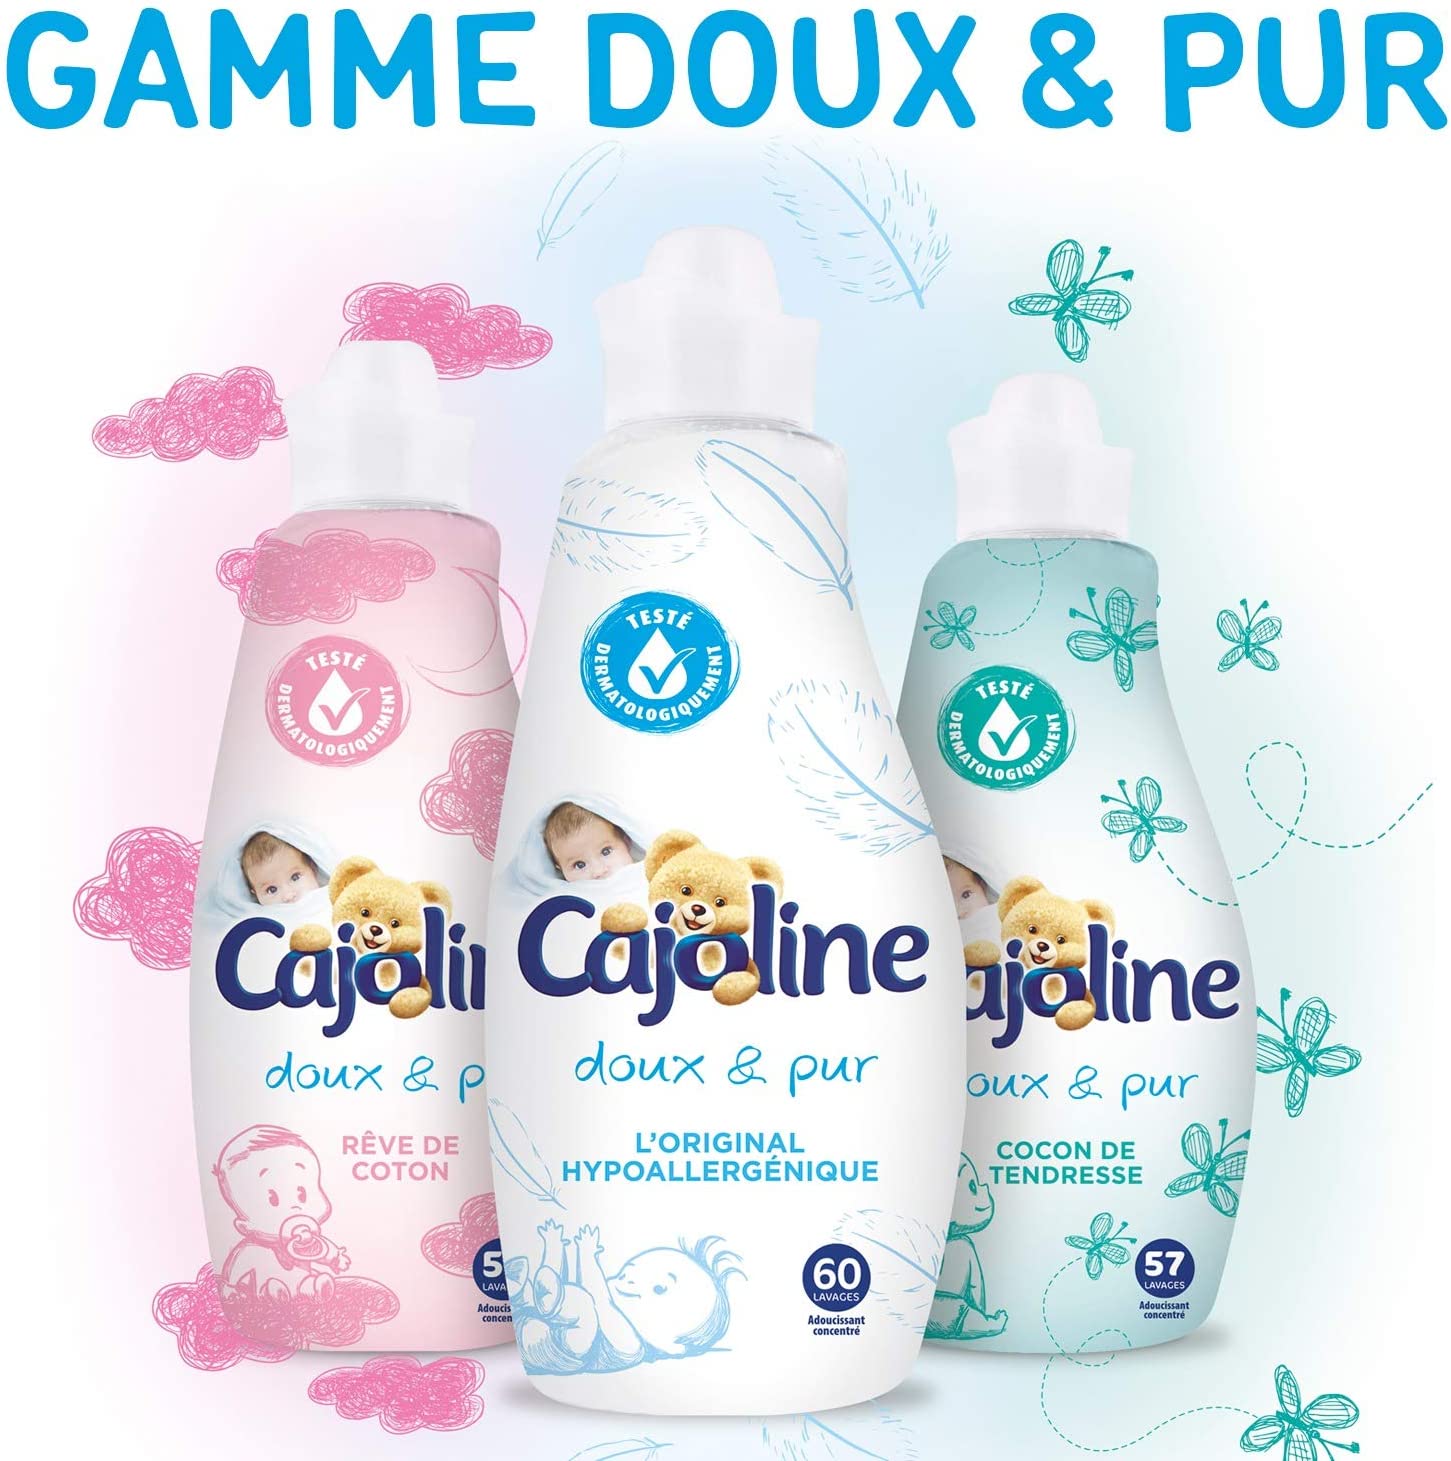 deal - Cajoline Adoucissant Concentré, Doux & Pur, Peaux sensibles,  Hypoallergénique 750ml 30 LAVAGES 1,80€ ur